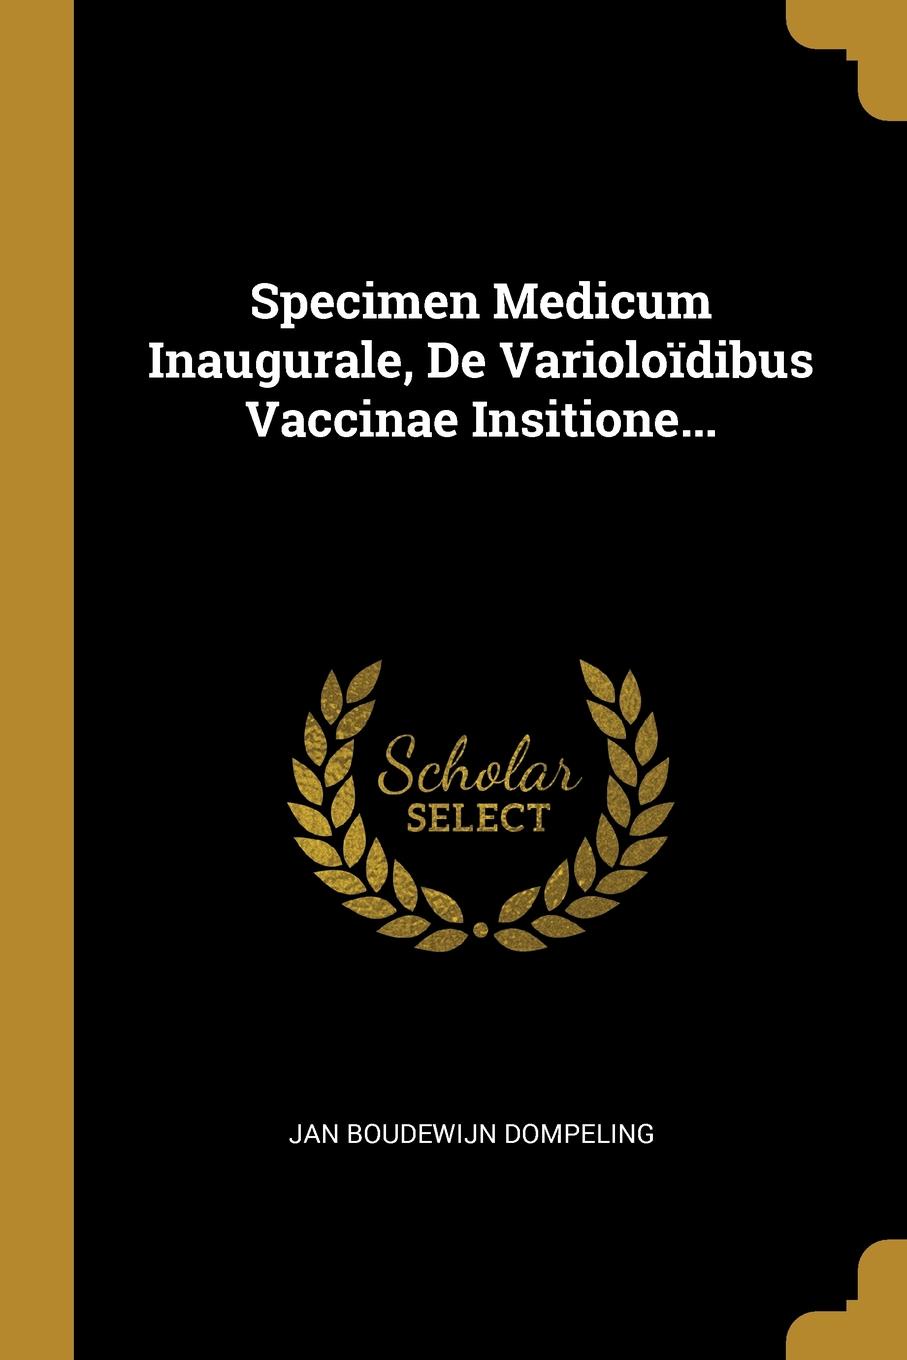 Specimen Medicum Inaugurale, De Varioloidibus Vaccinae Insitione...